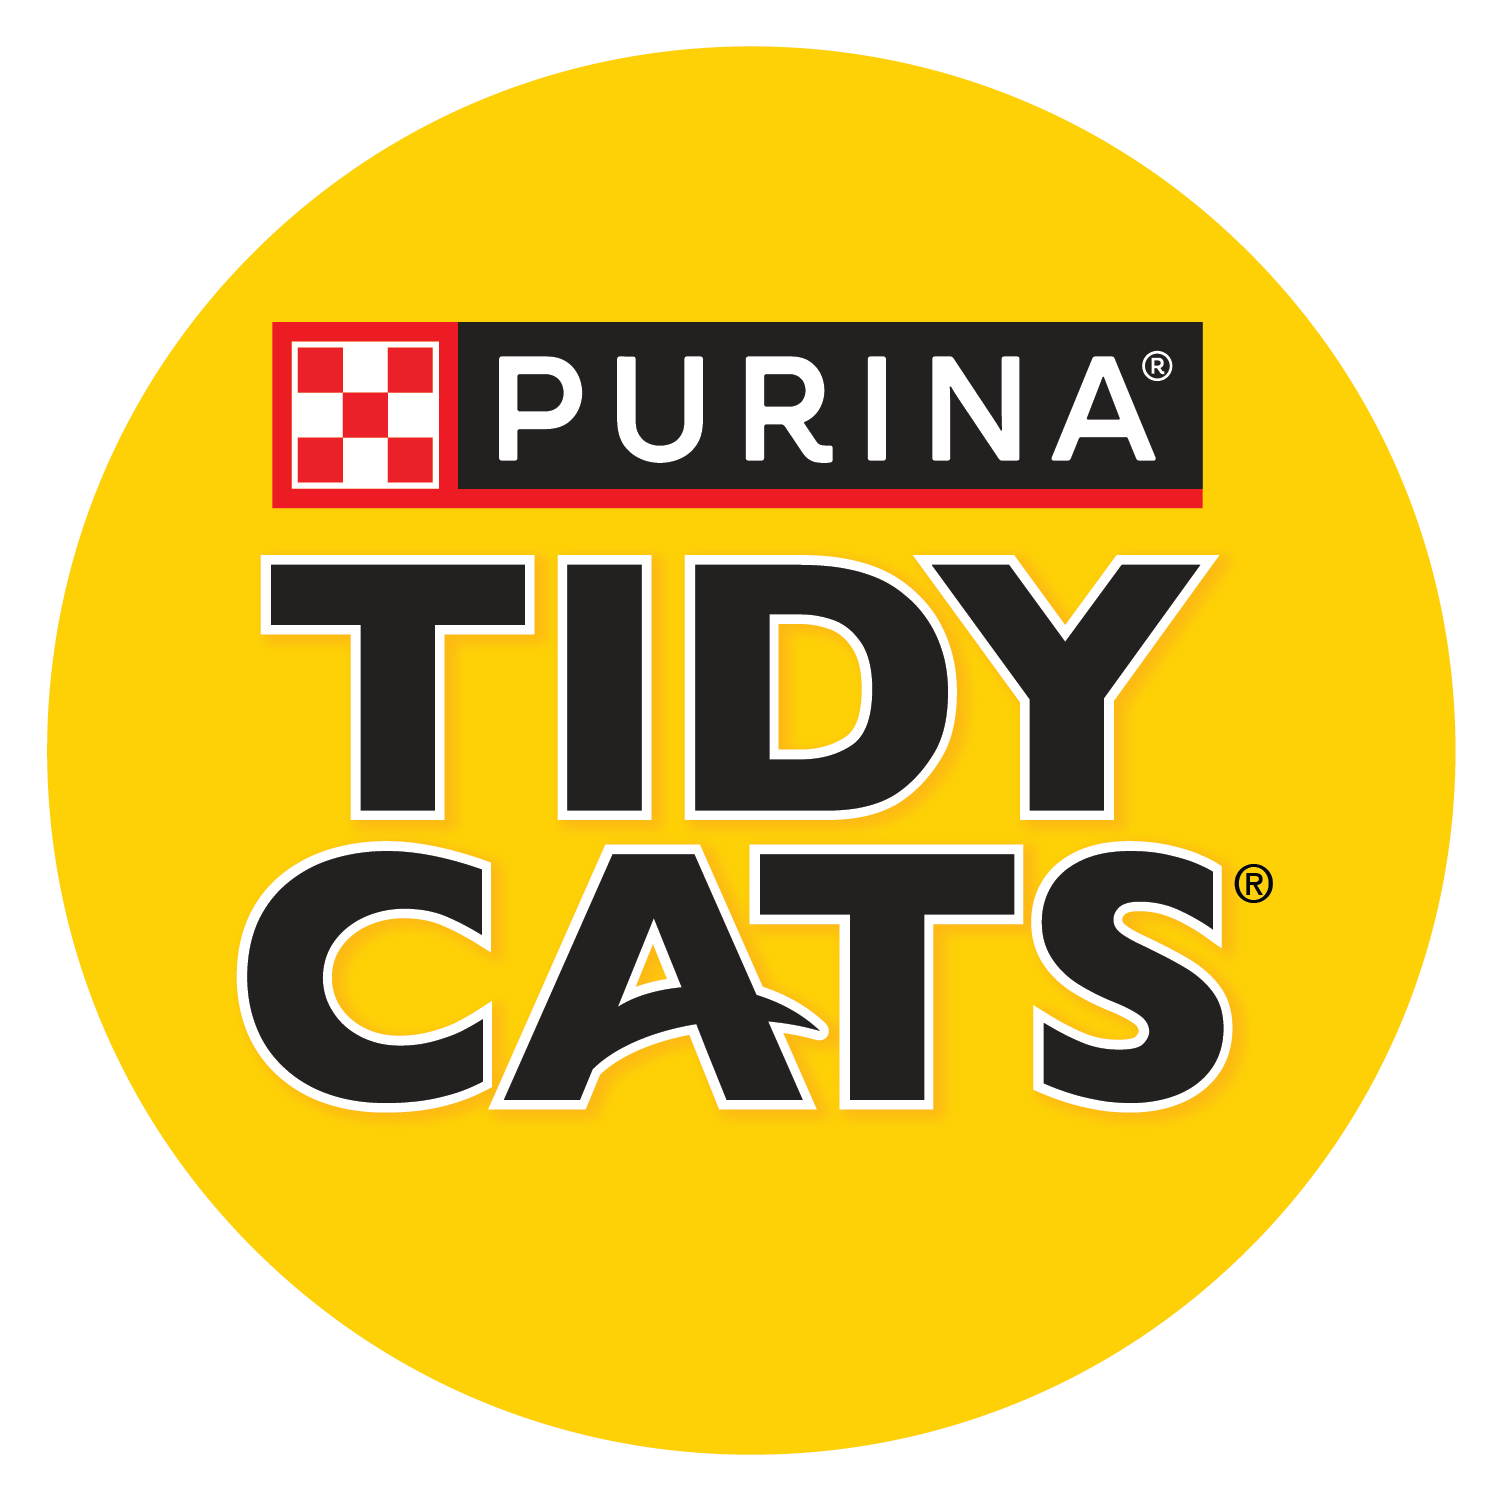 Purina Tidy Cats